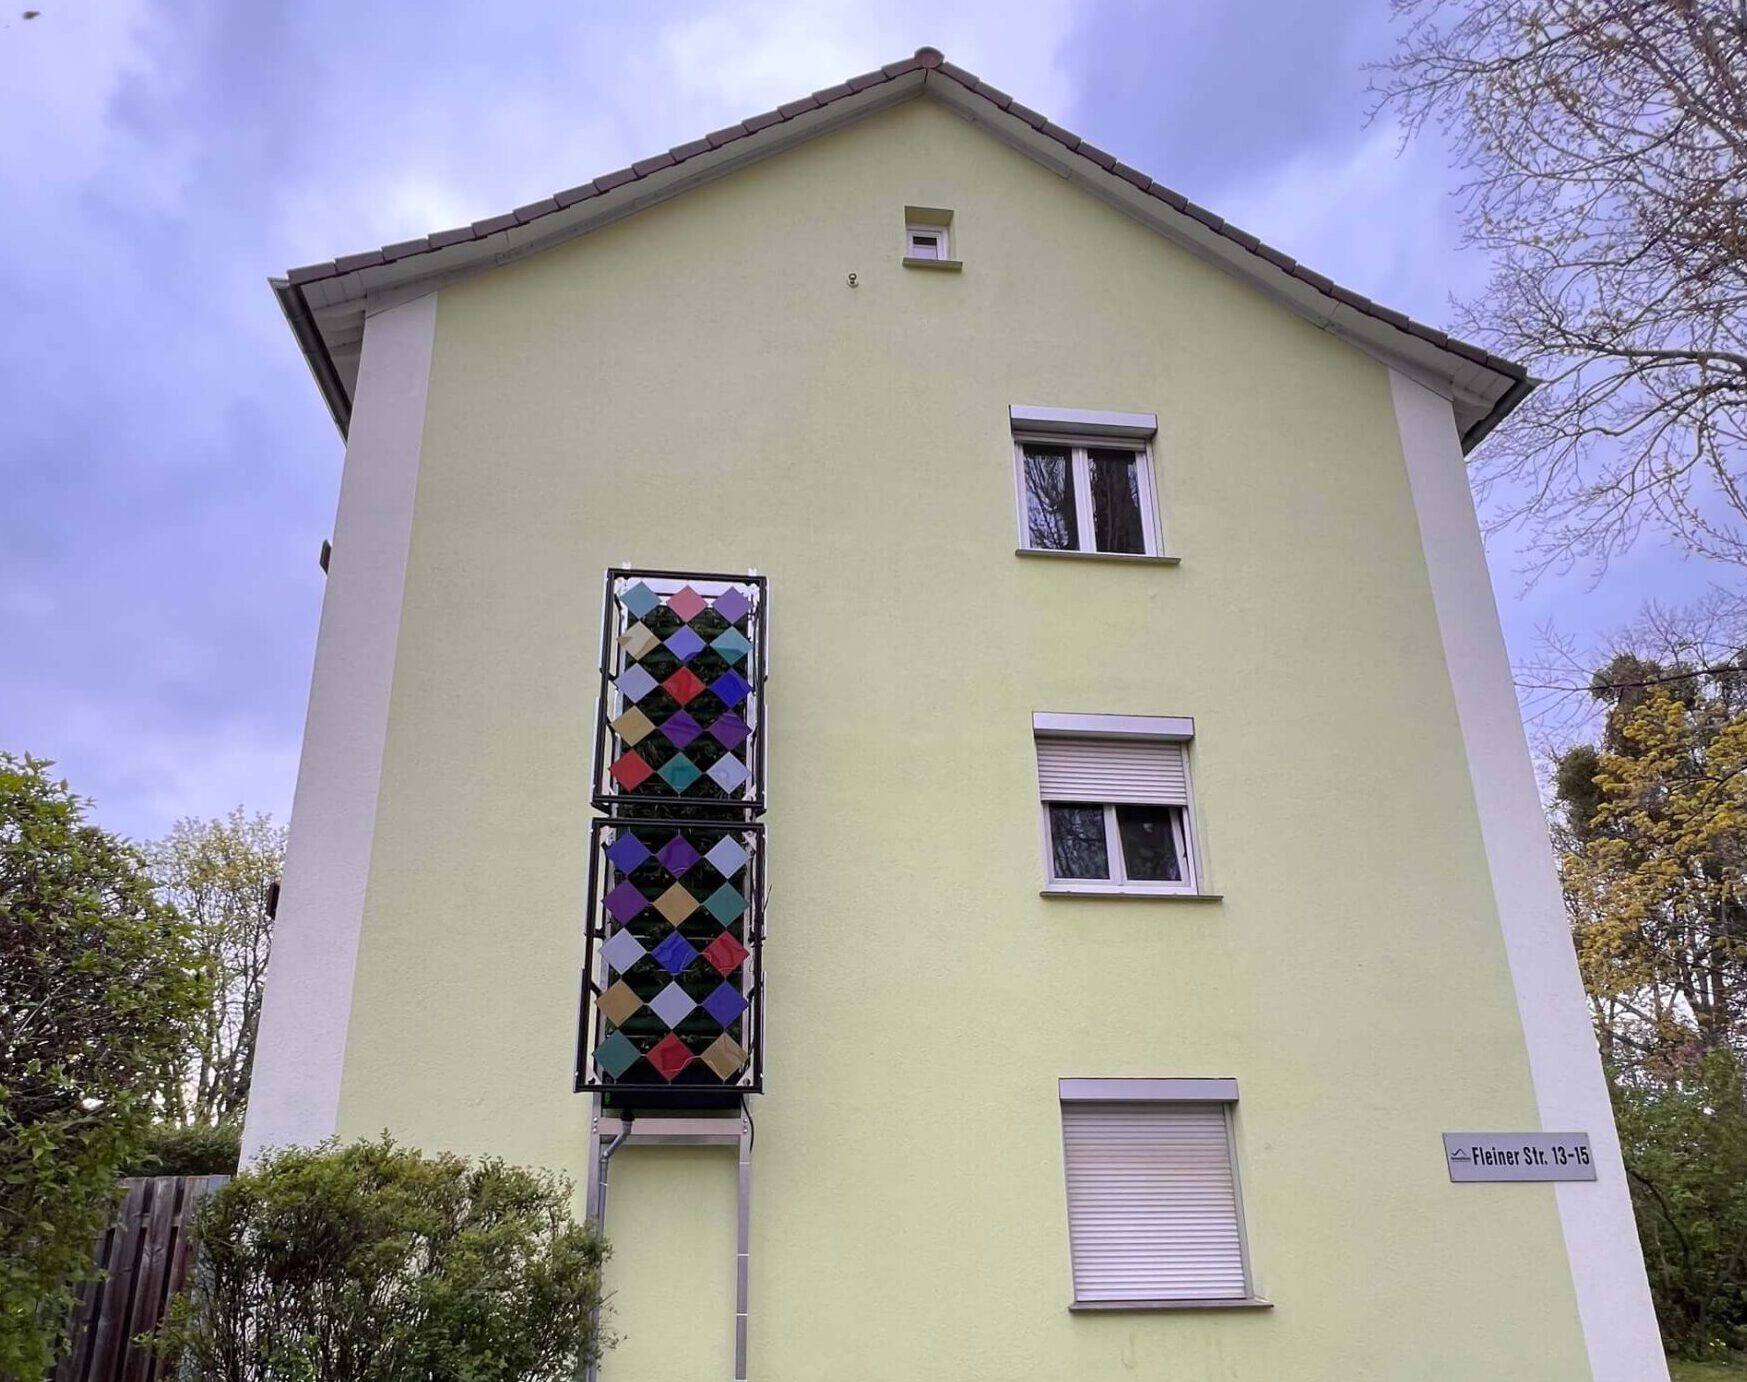 Fertige Fassadenbegrünung an einer Hauswand im Quartier "Am Rotweg".